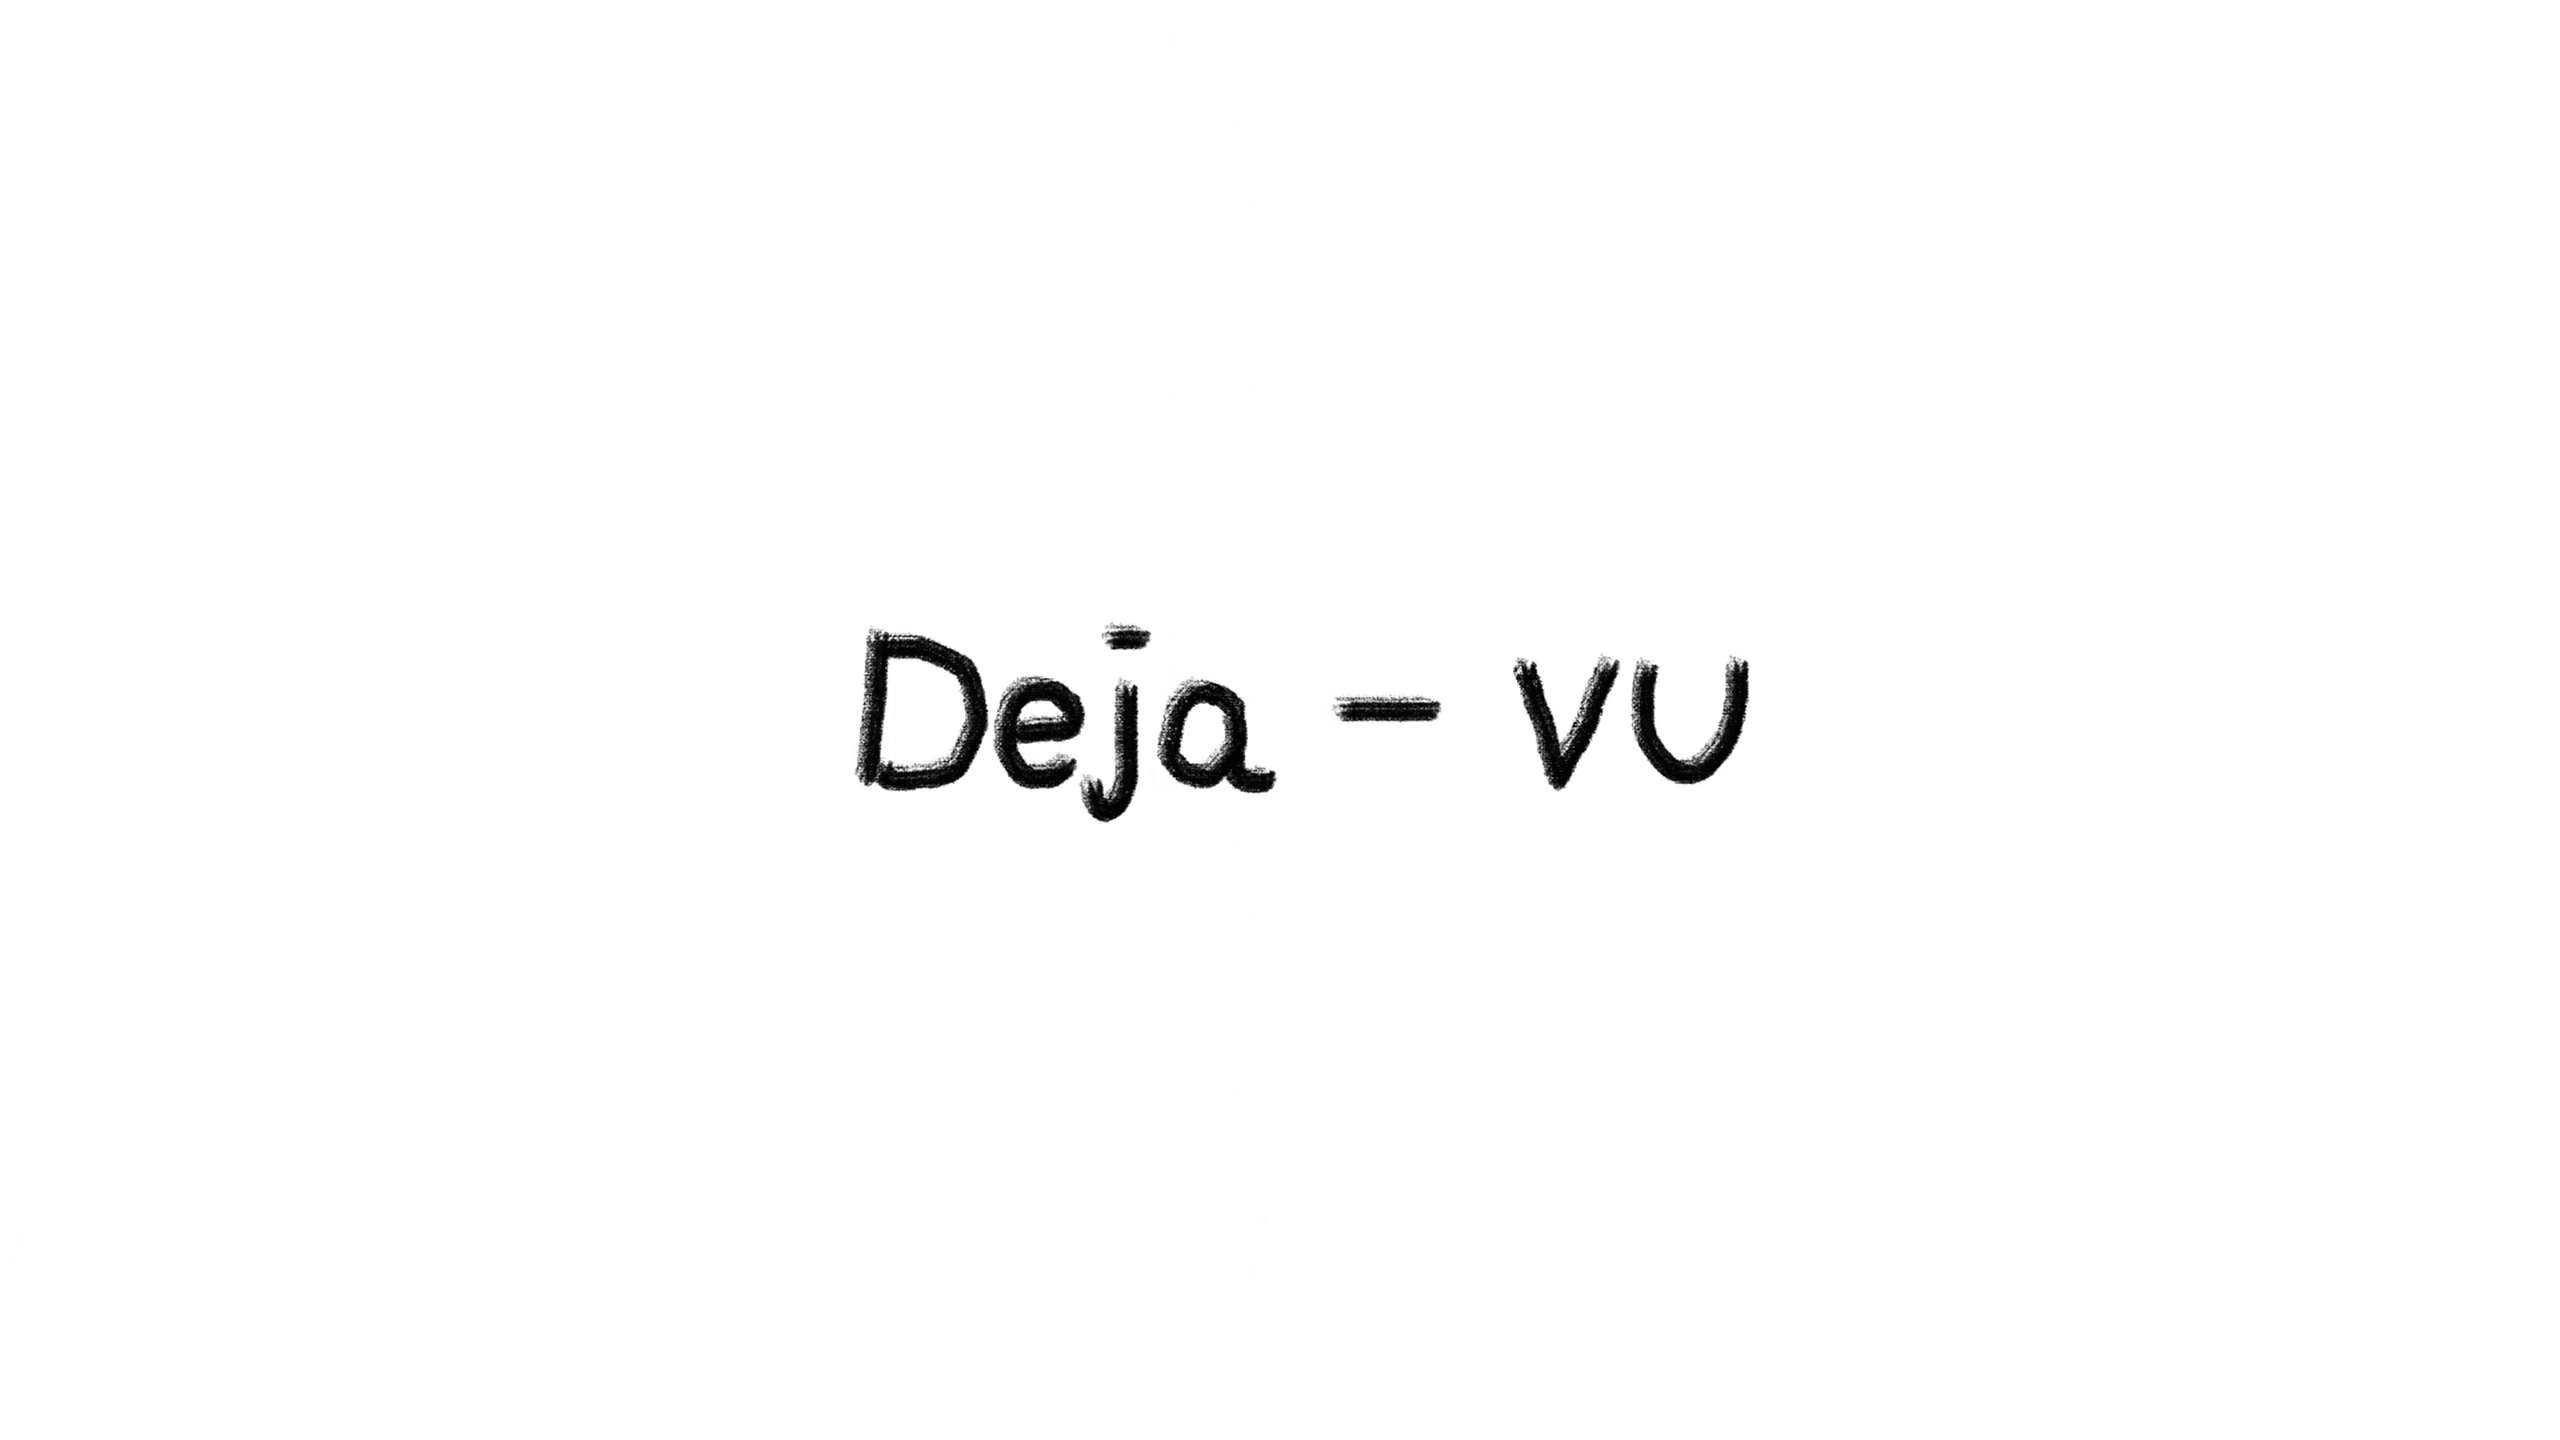 Deja-vu(데자뷰)